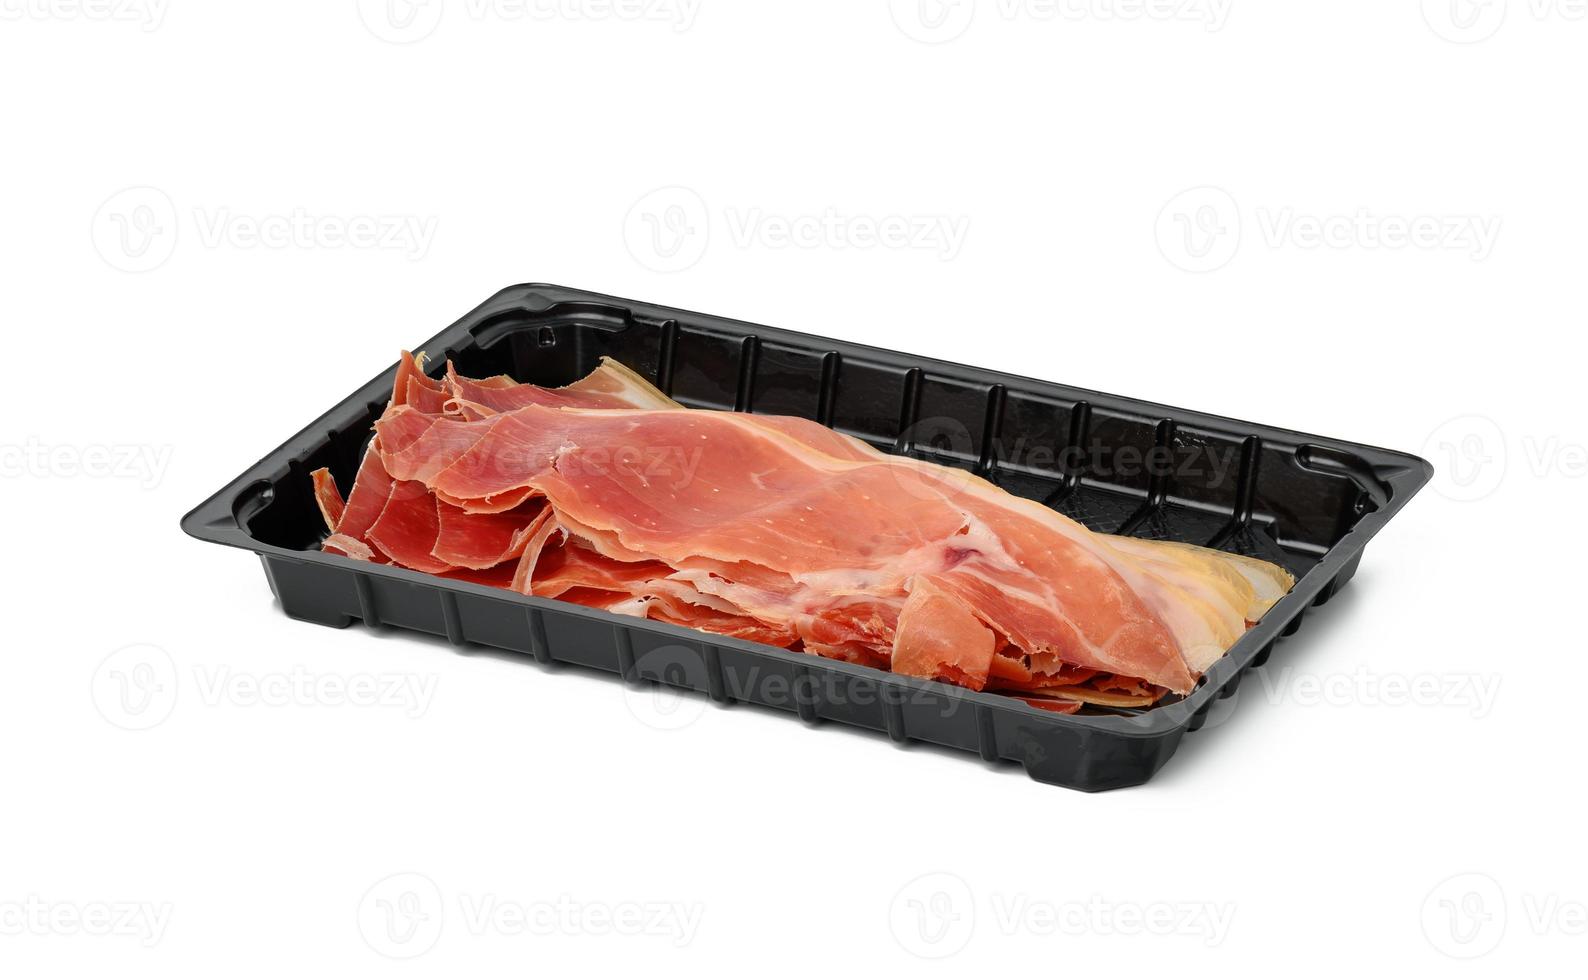 geschnittenes Prosciutto-Fleisch in dünnen Scheiben in schwarzer Kunststoffverpackung auf einem weißen Teller foto